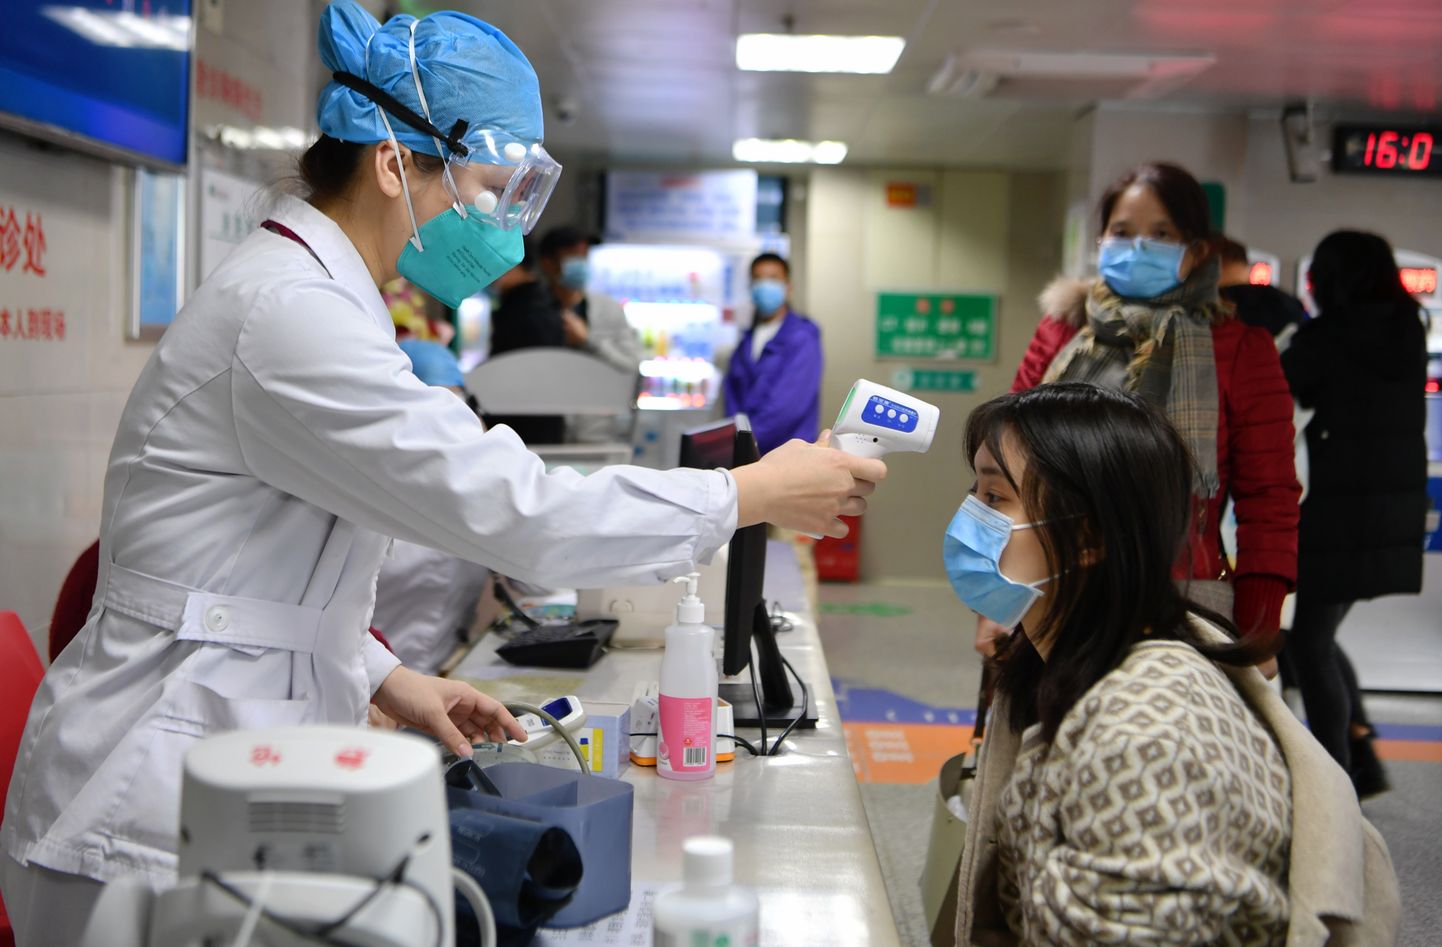 Hiina medtöötaja mõõtmas kehatemperatuuri, et teha kindlaks haiged inimesed, eelkõige need, kellel on uus koroonaviirus